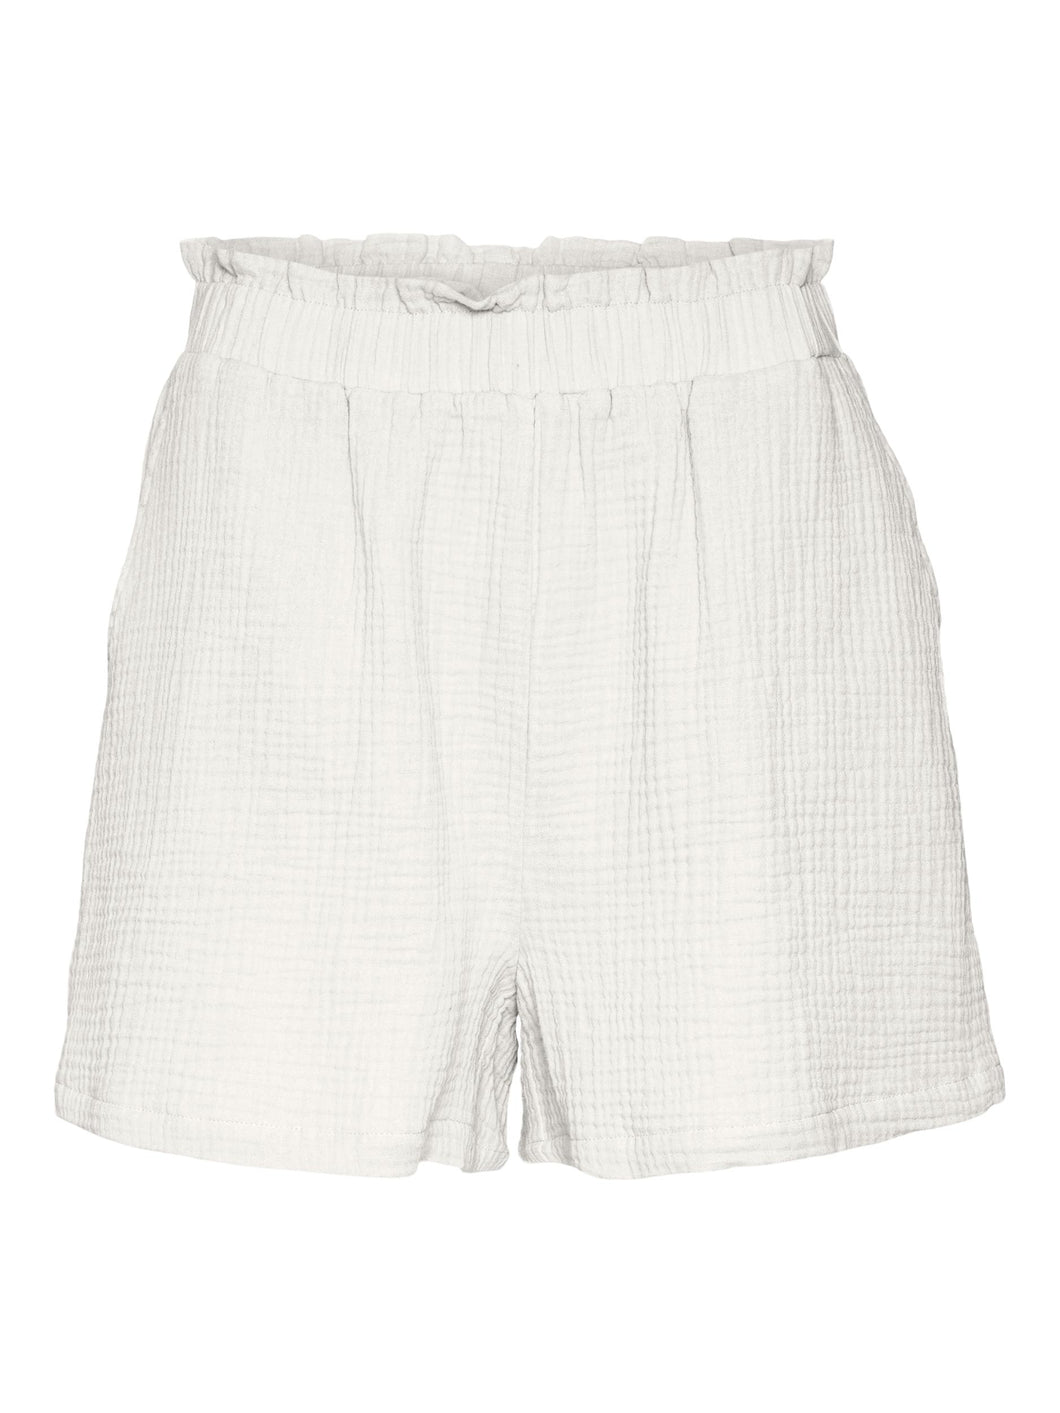 Vero Moda Natali HW Shorts - White